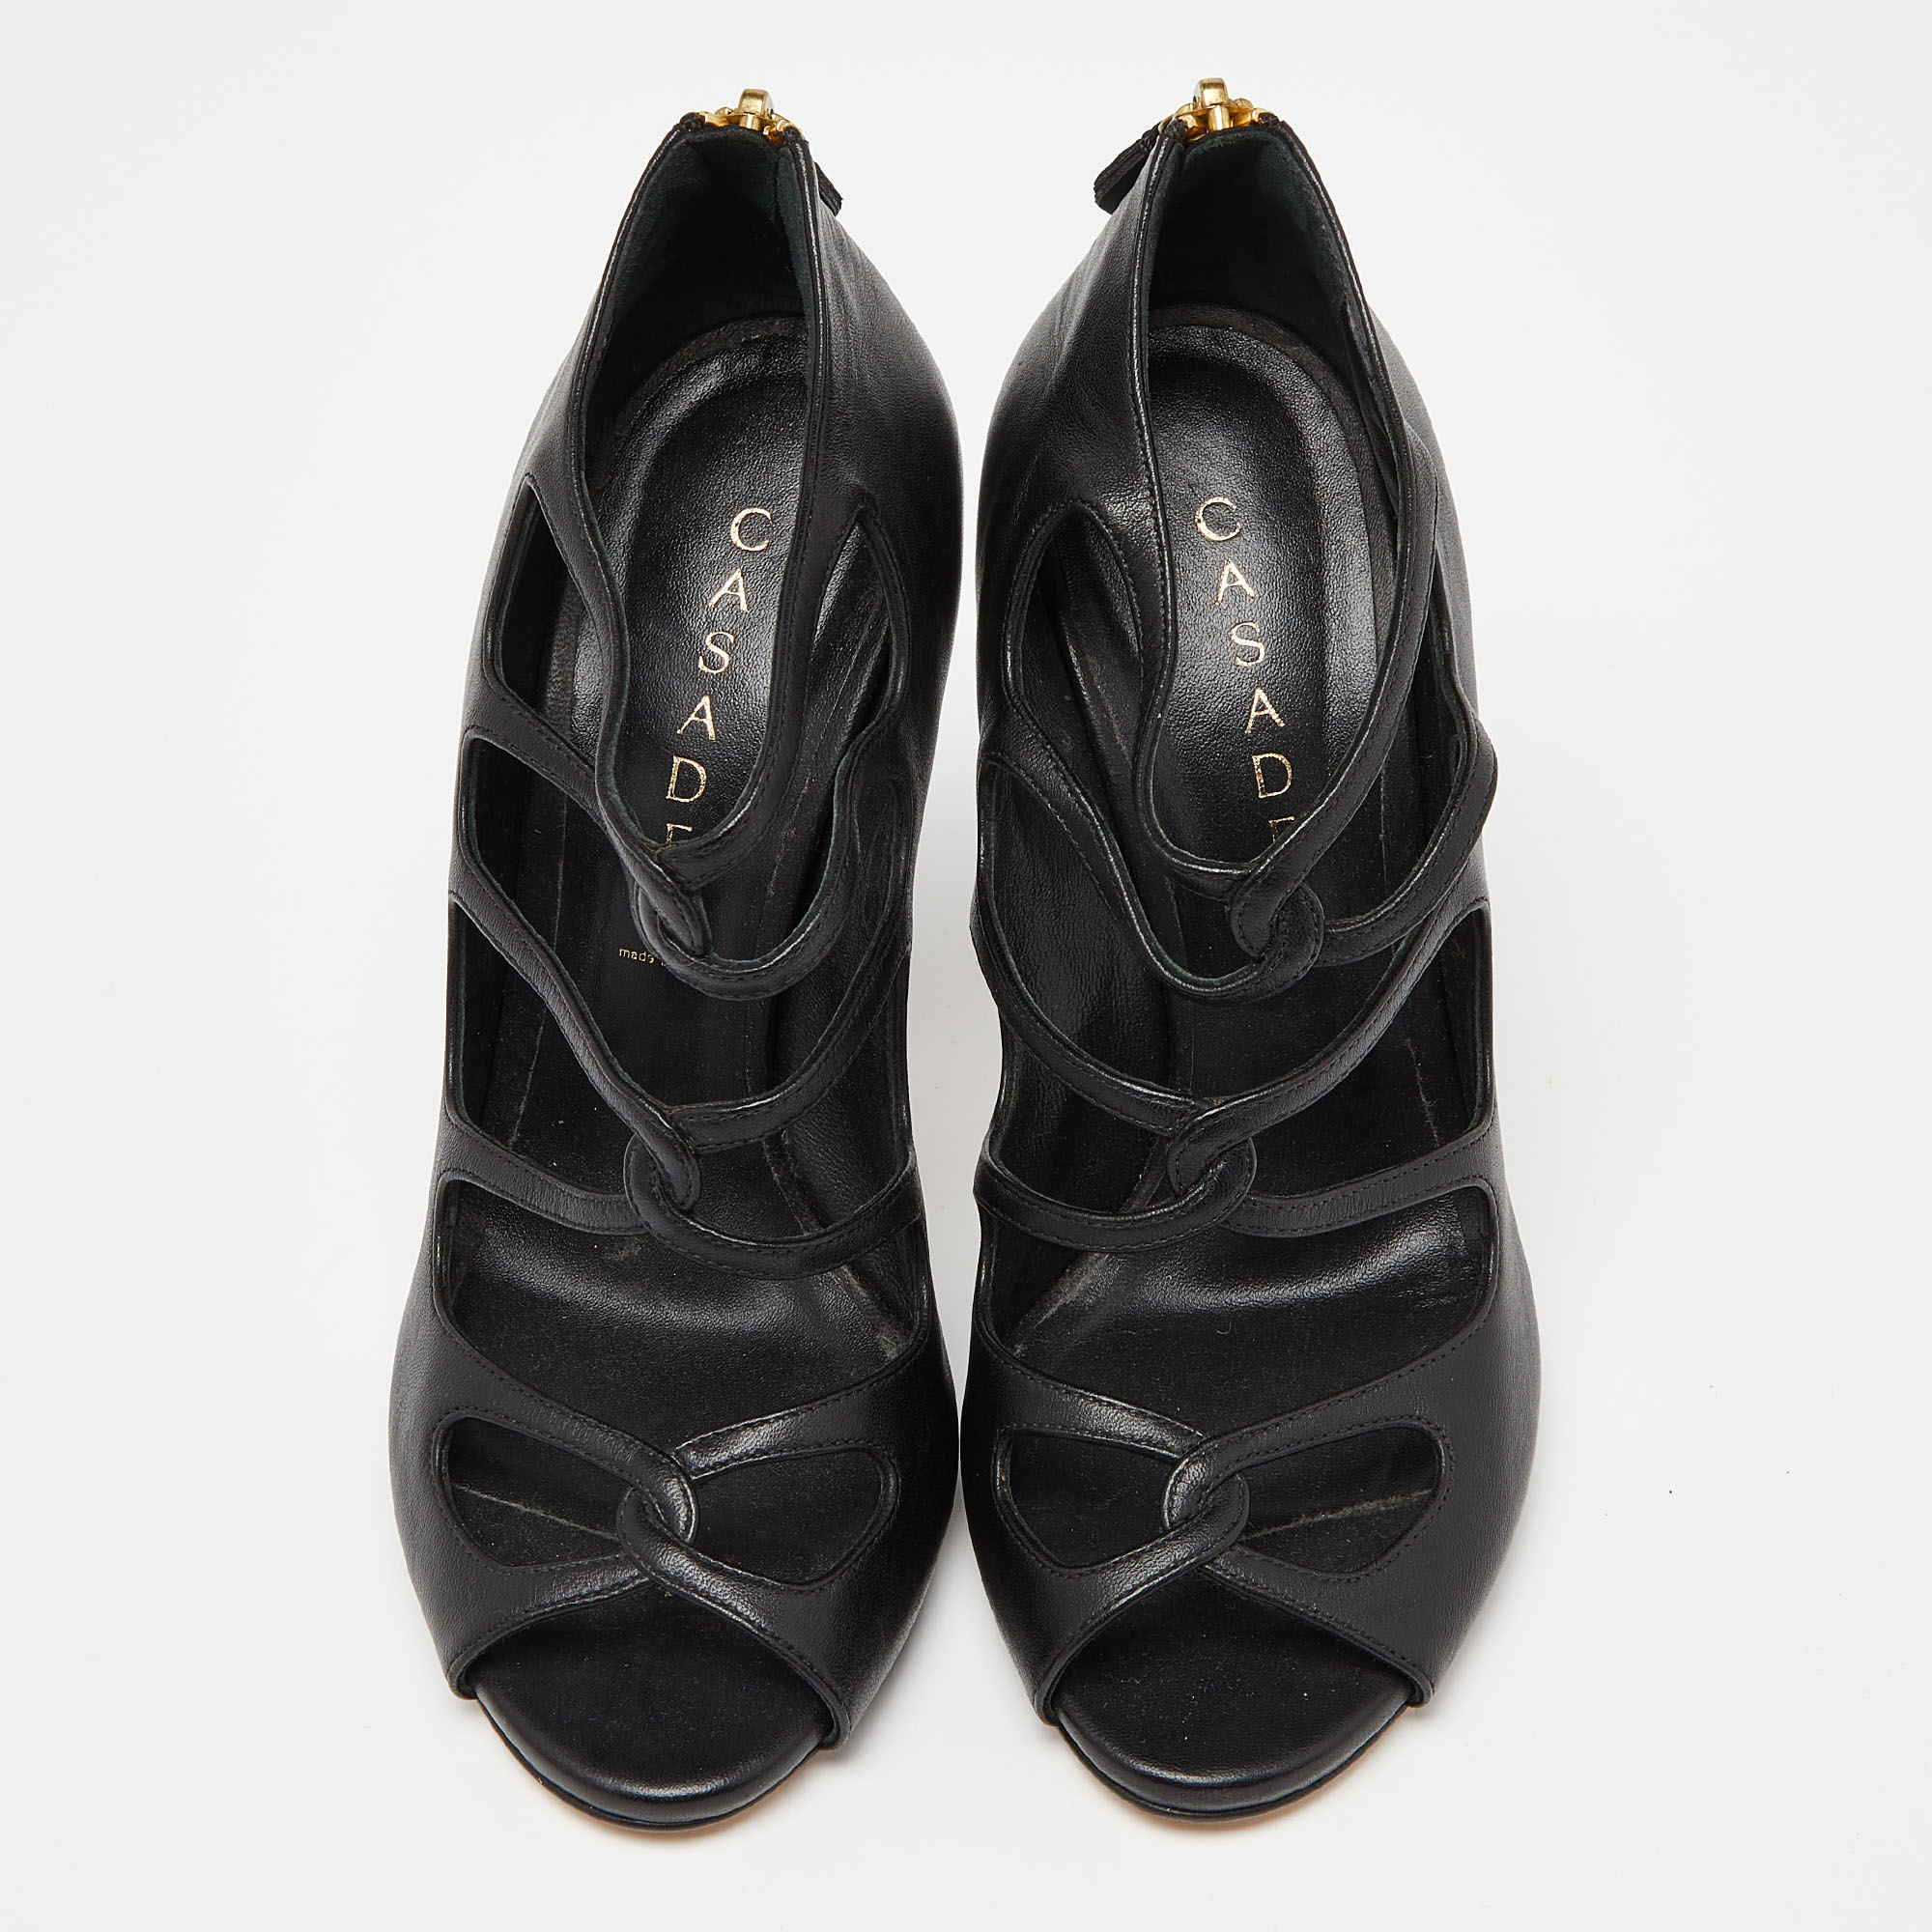 Casadei Black Leather Cutout Sandals Size 37